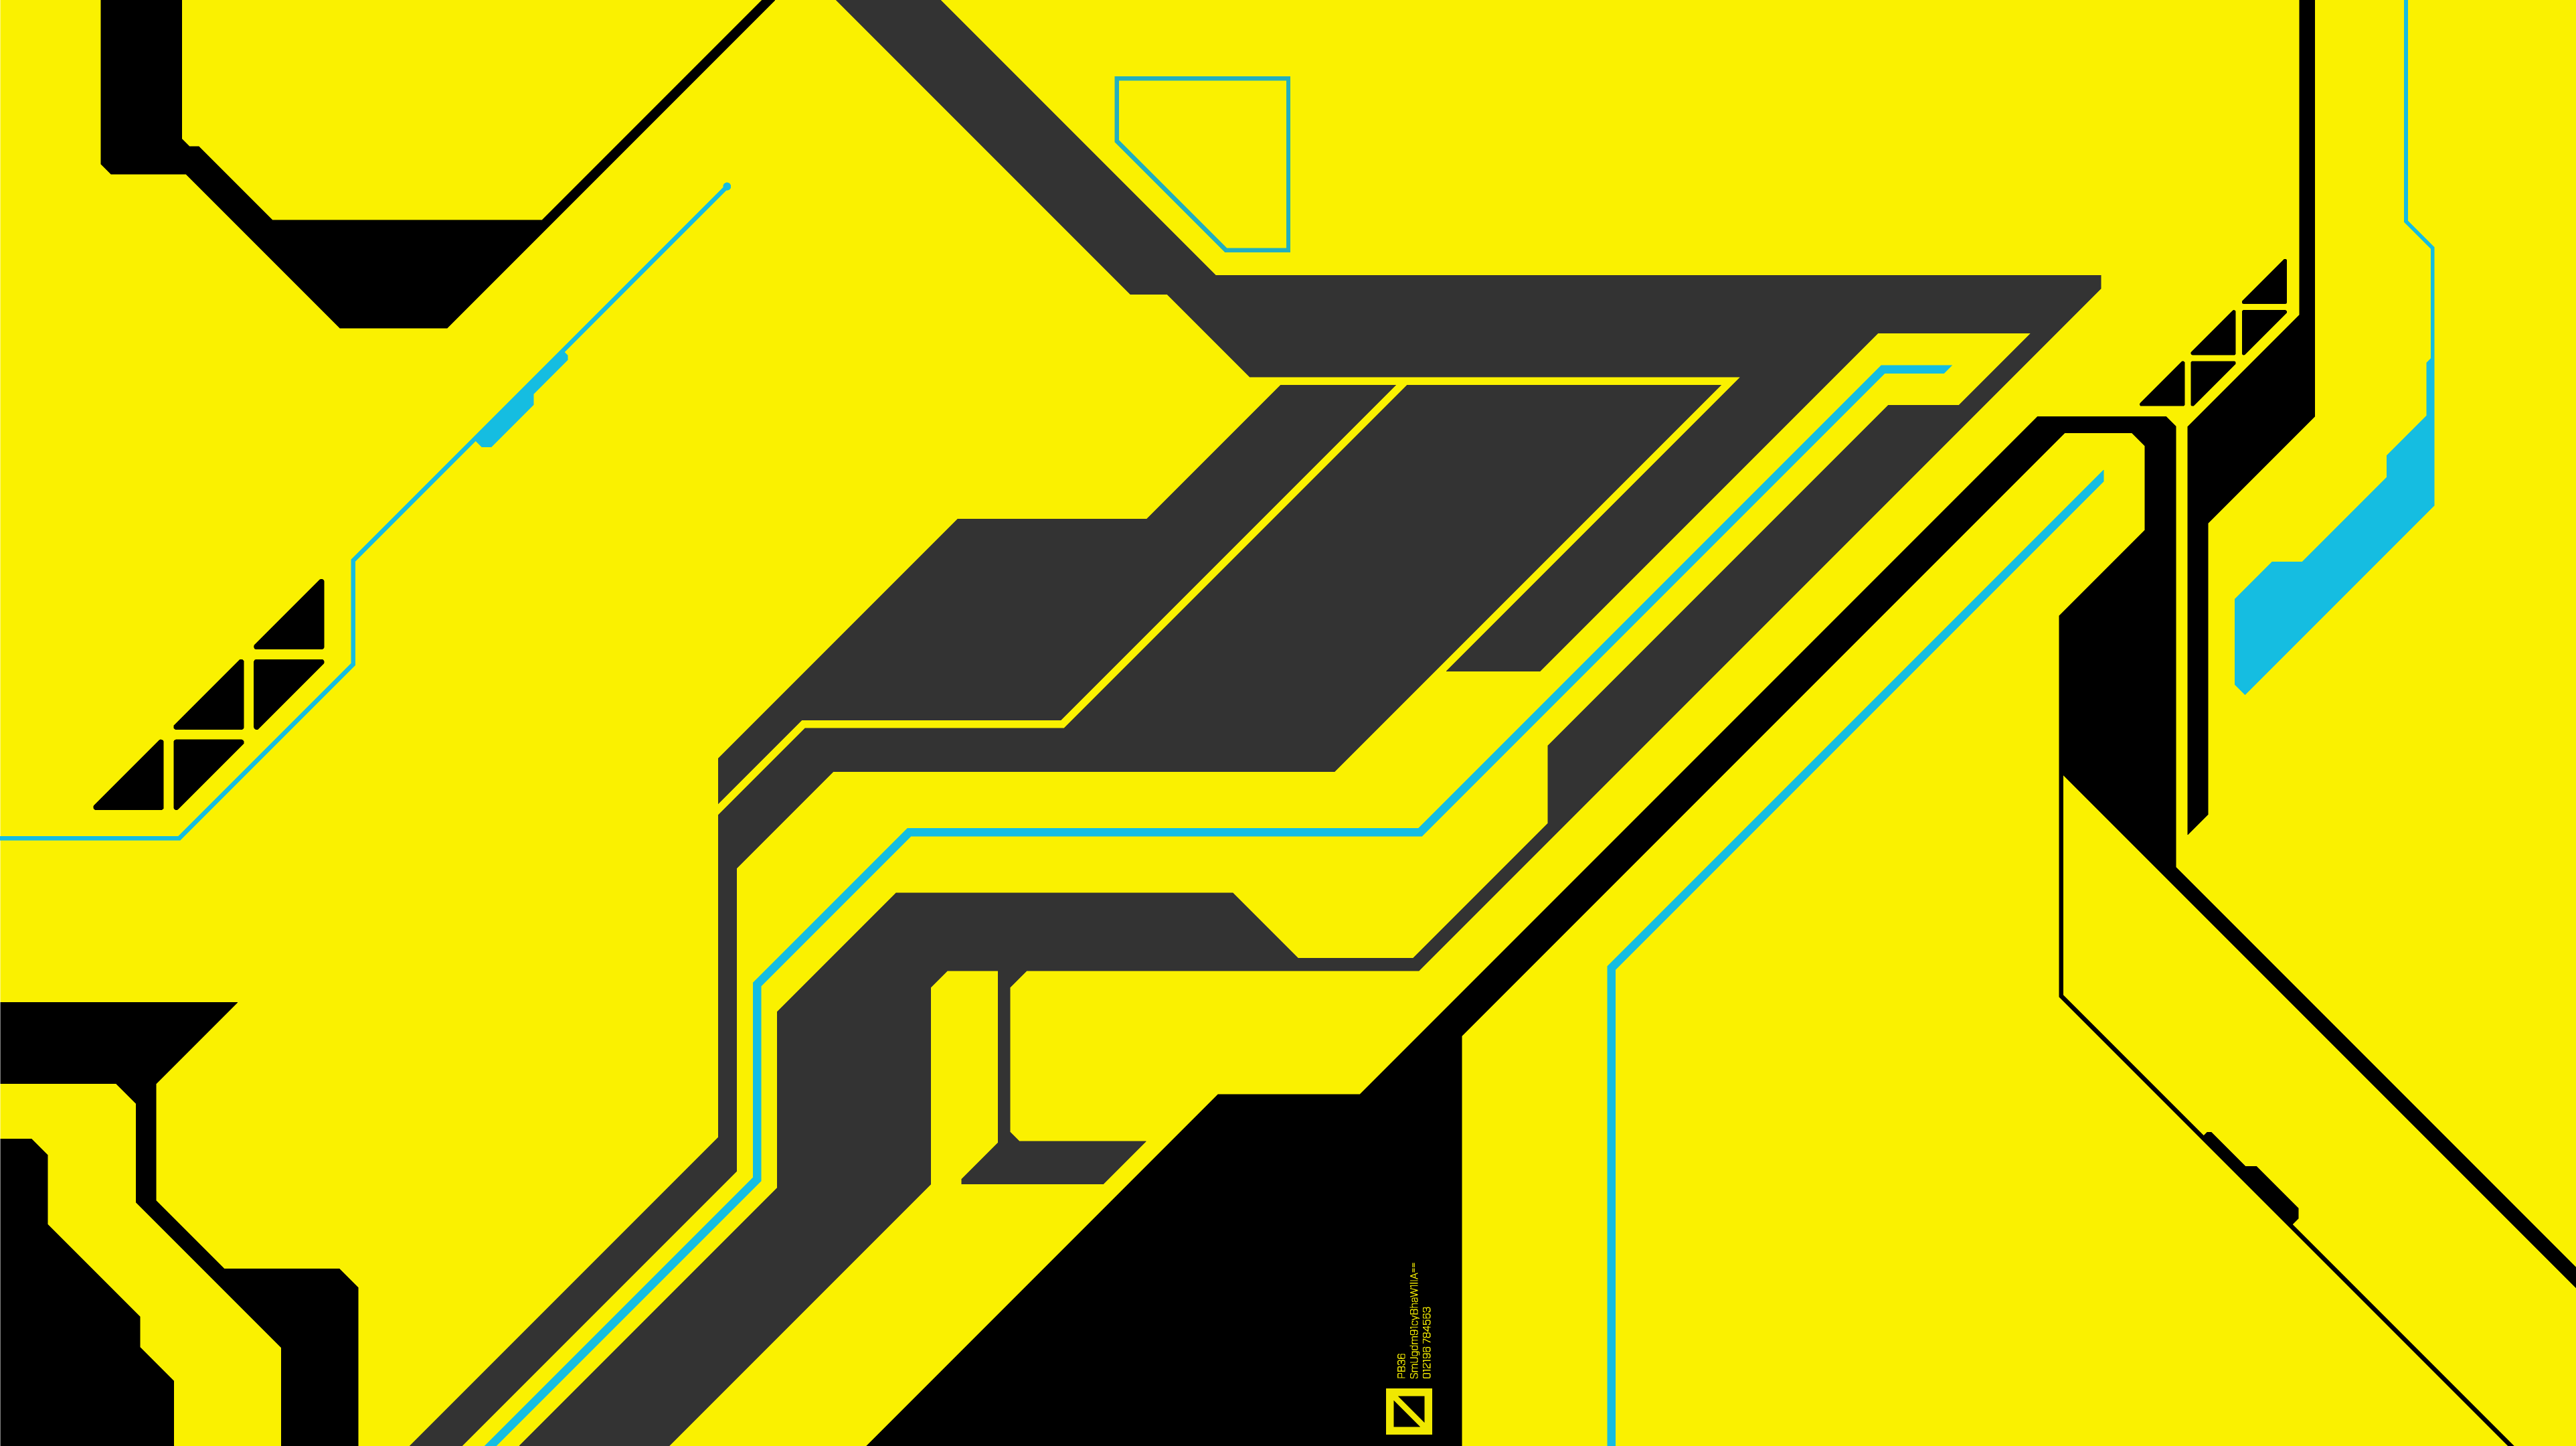 Wallpaper-Cyberpunk-4k3 by Playbox36 on DeviantArt